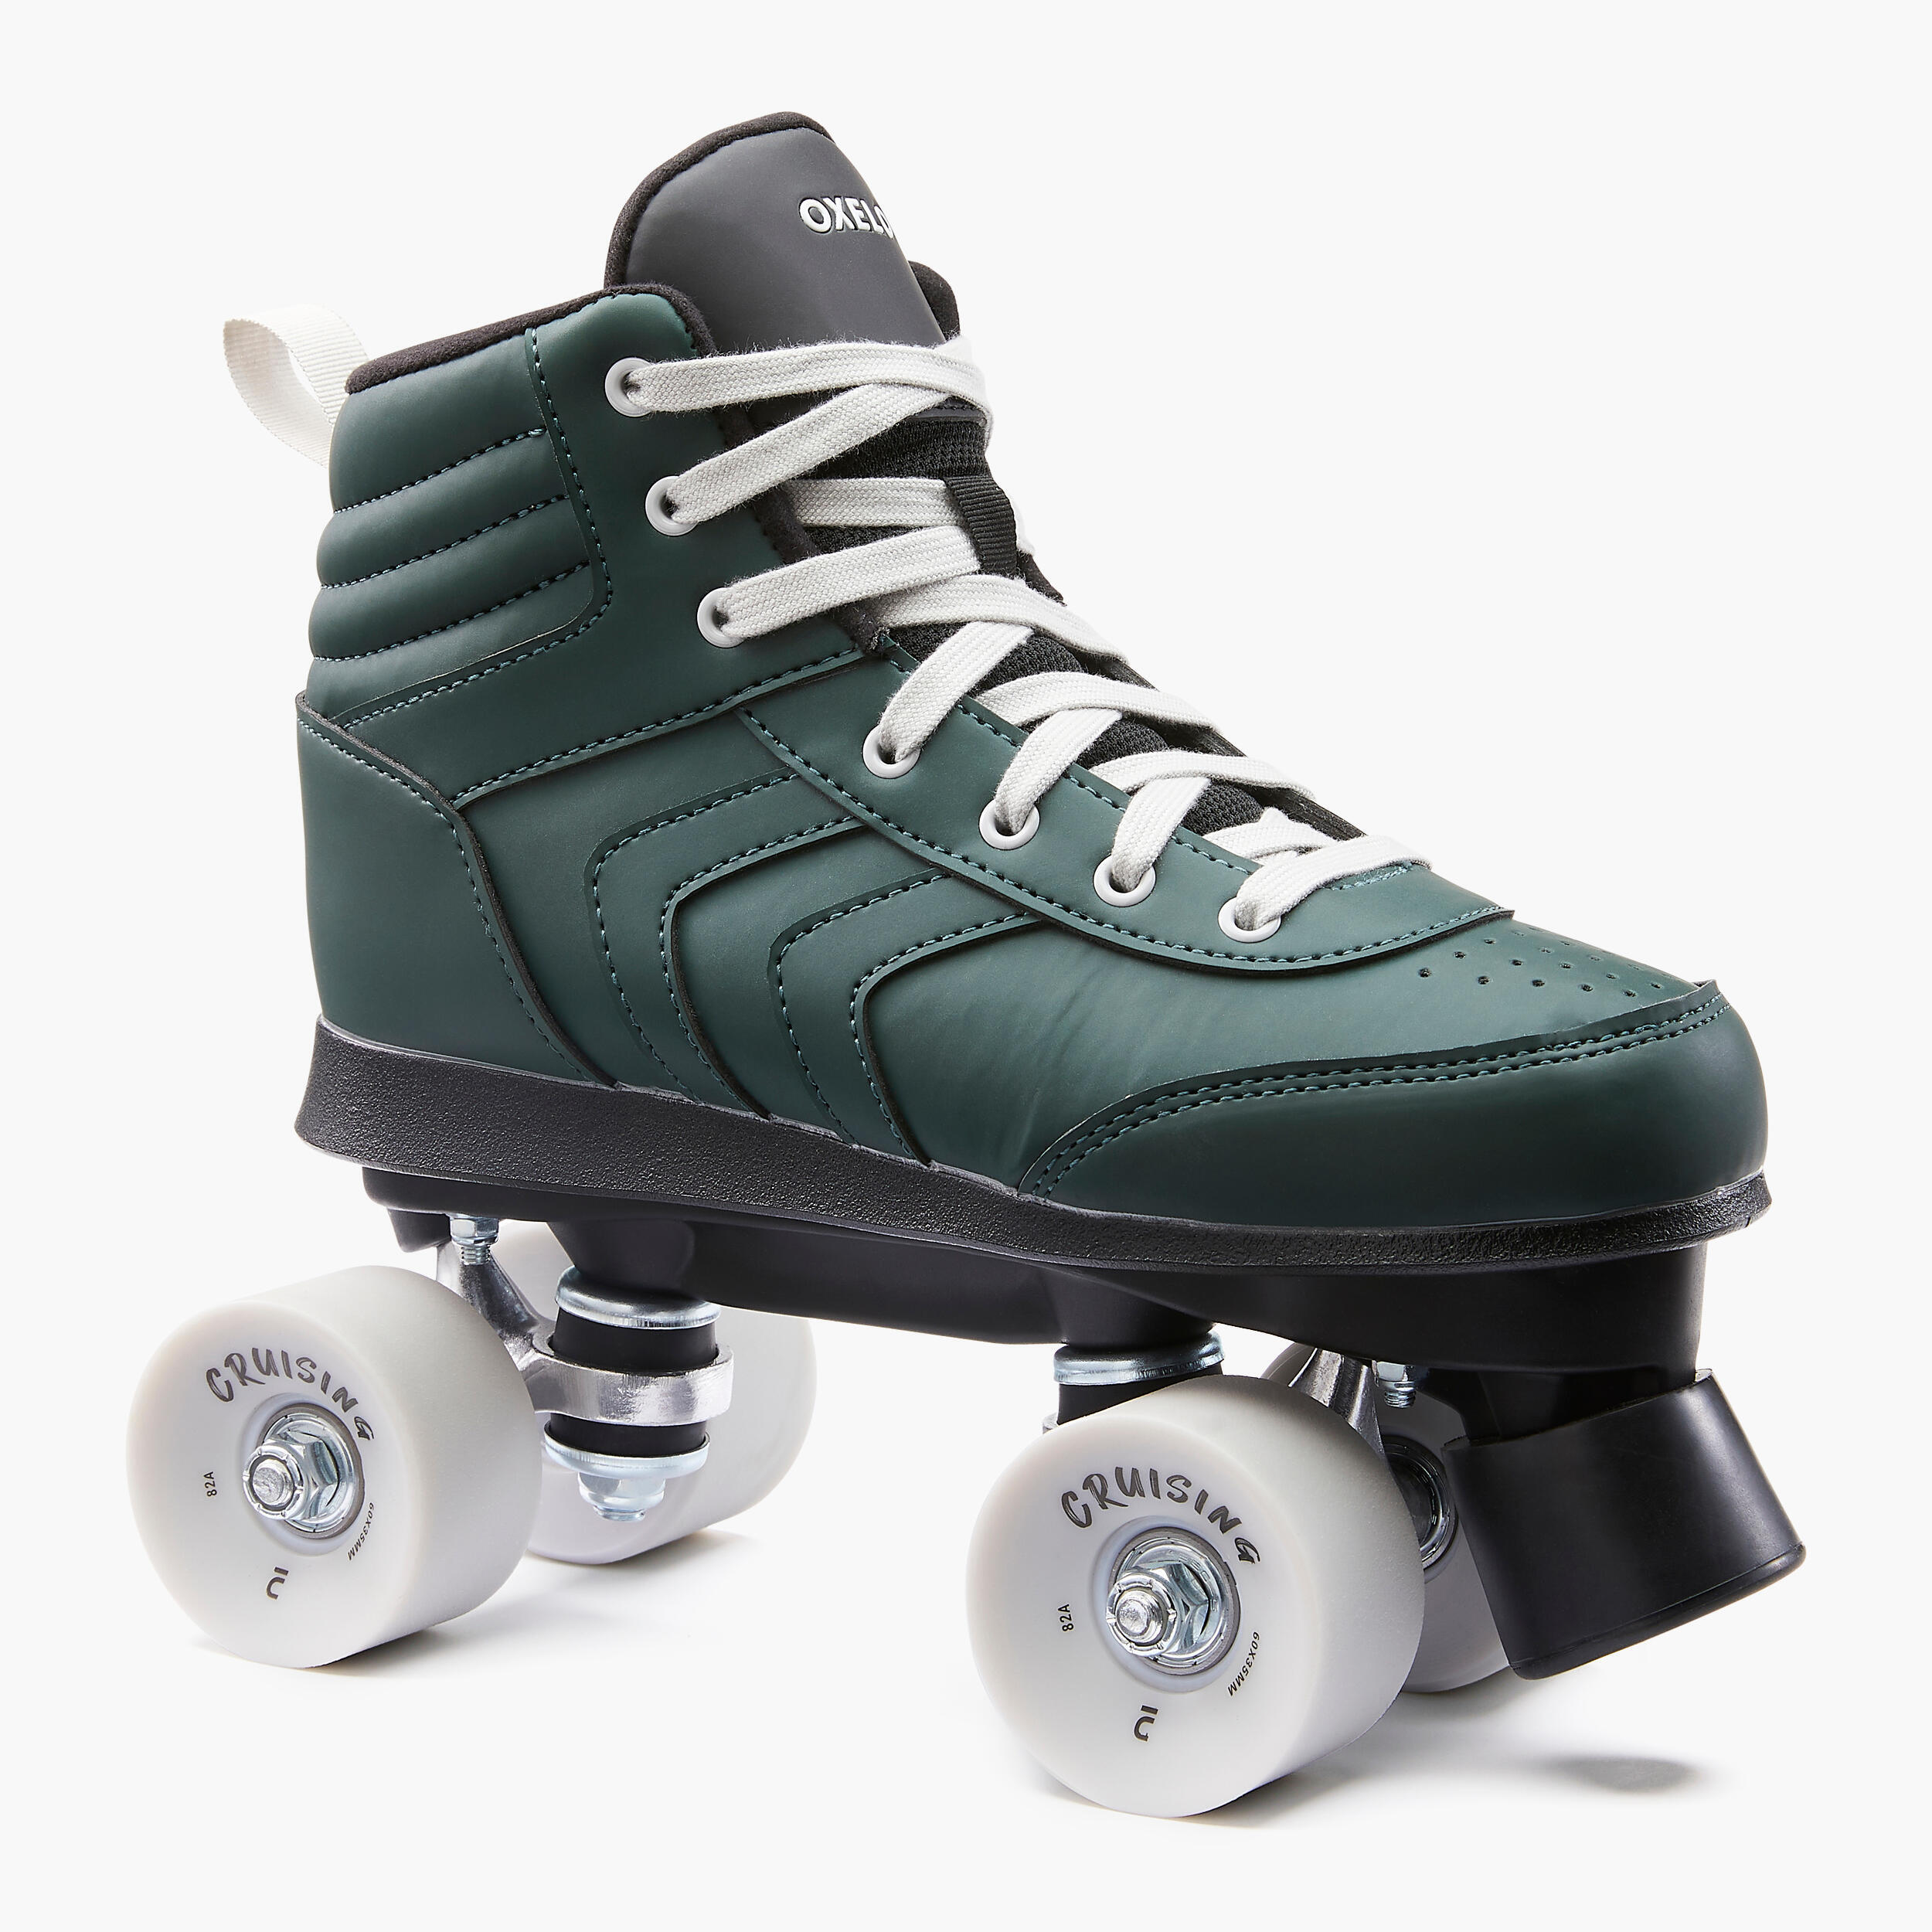 Adult Roller Skates Quad 100 - Green 2/10